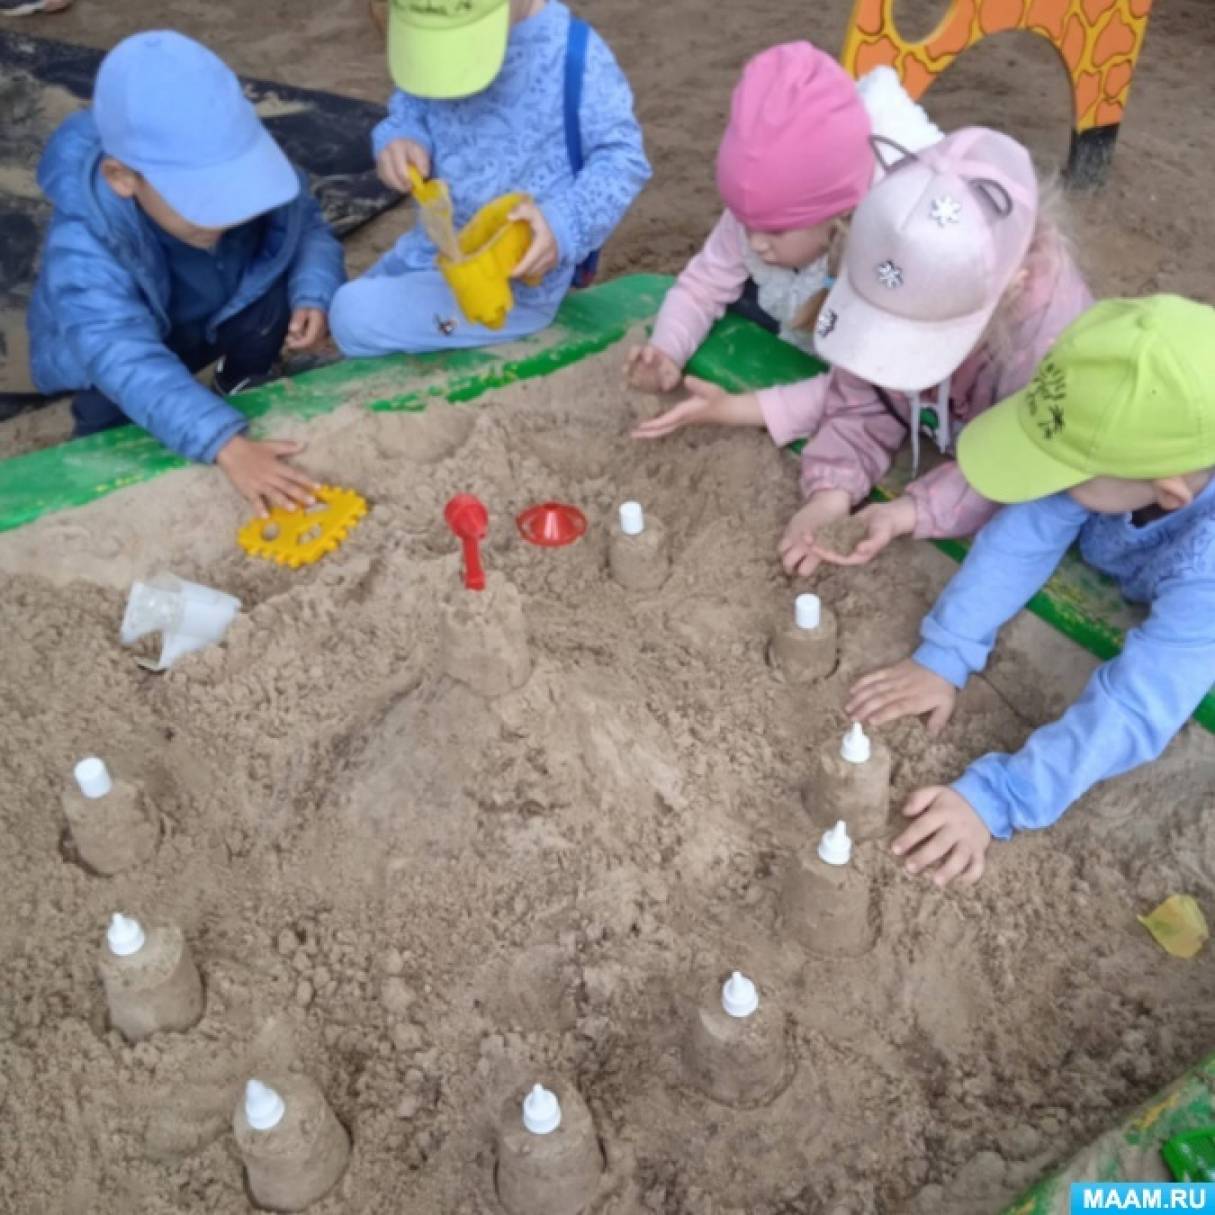 Игровое занятие с постройками из песка «Песочный город» для детей средней группы